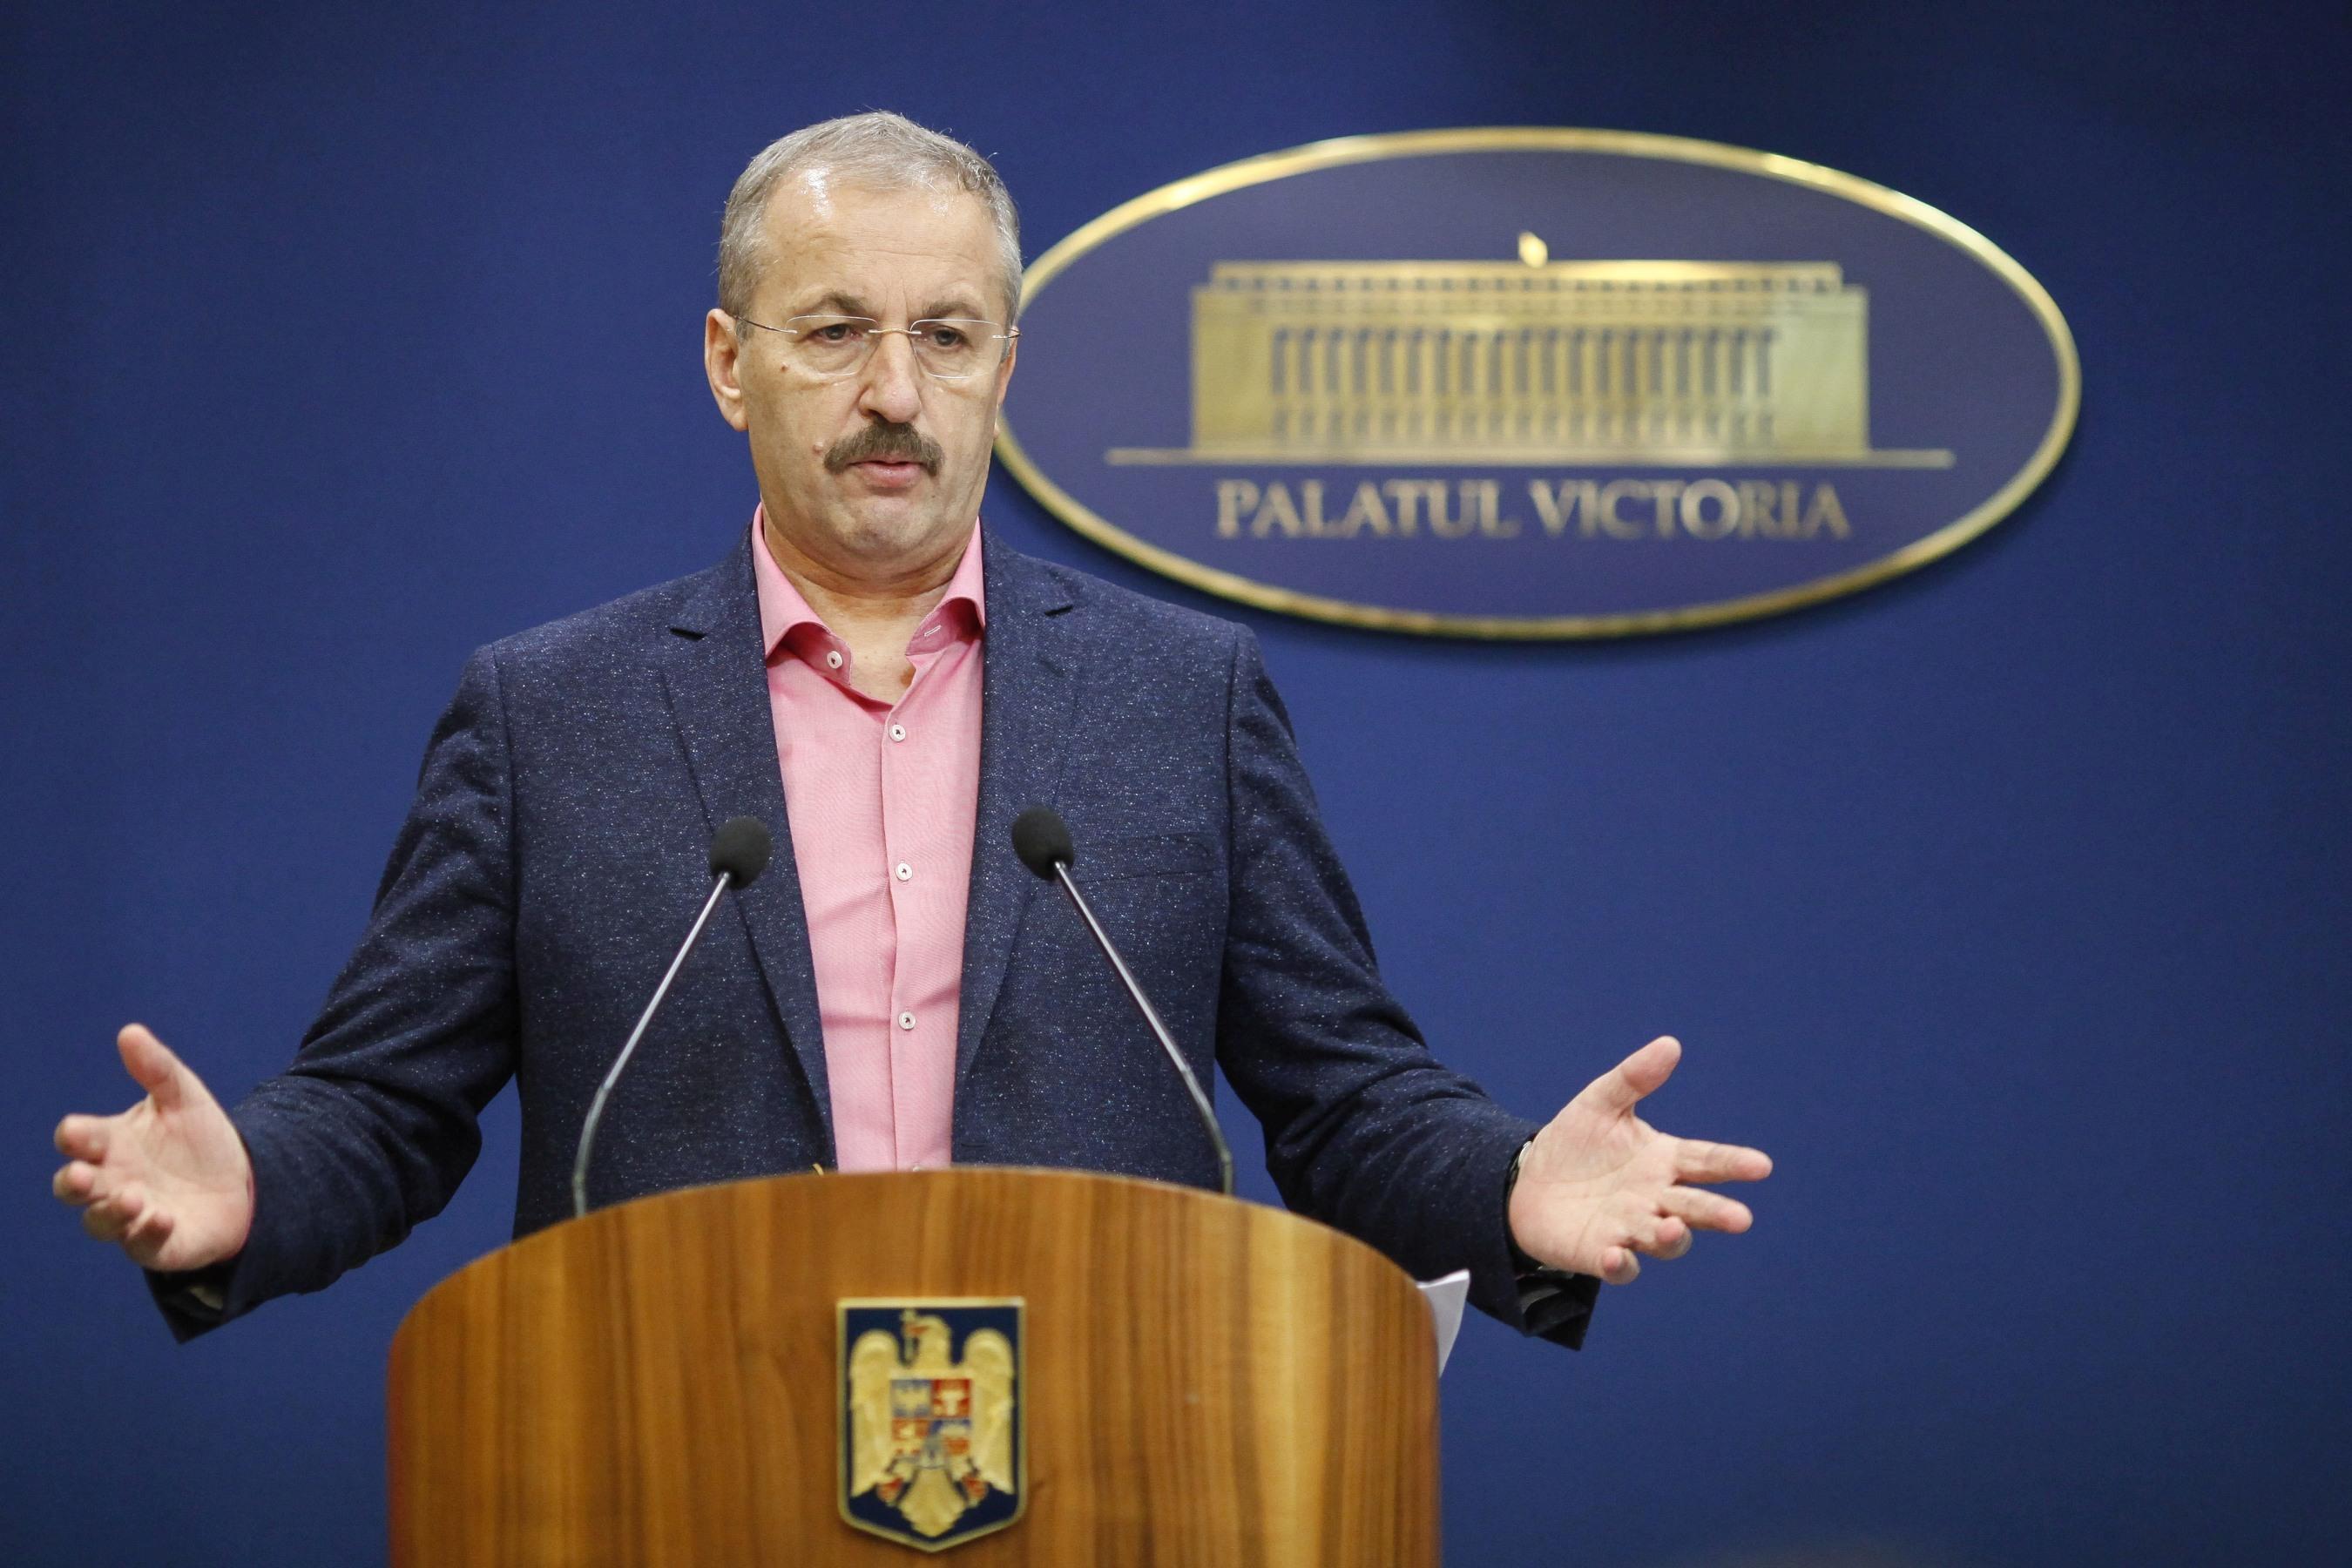 Vasile Dîncu în cămașă roz și sacou albastru, gesticulează și vorbește la microfon